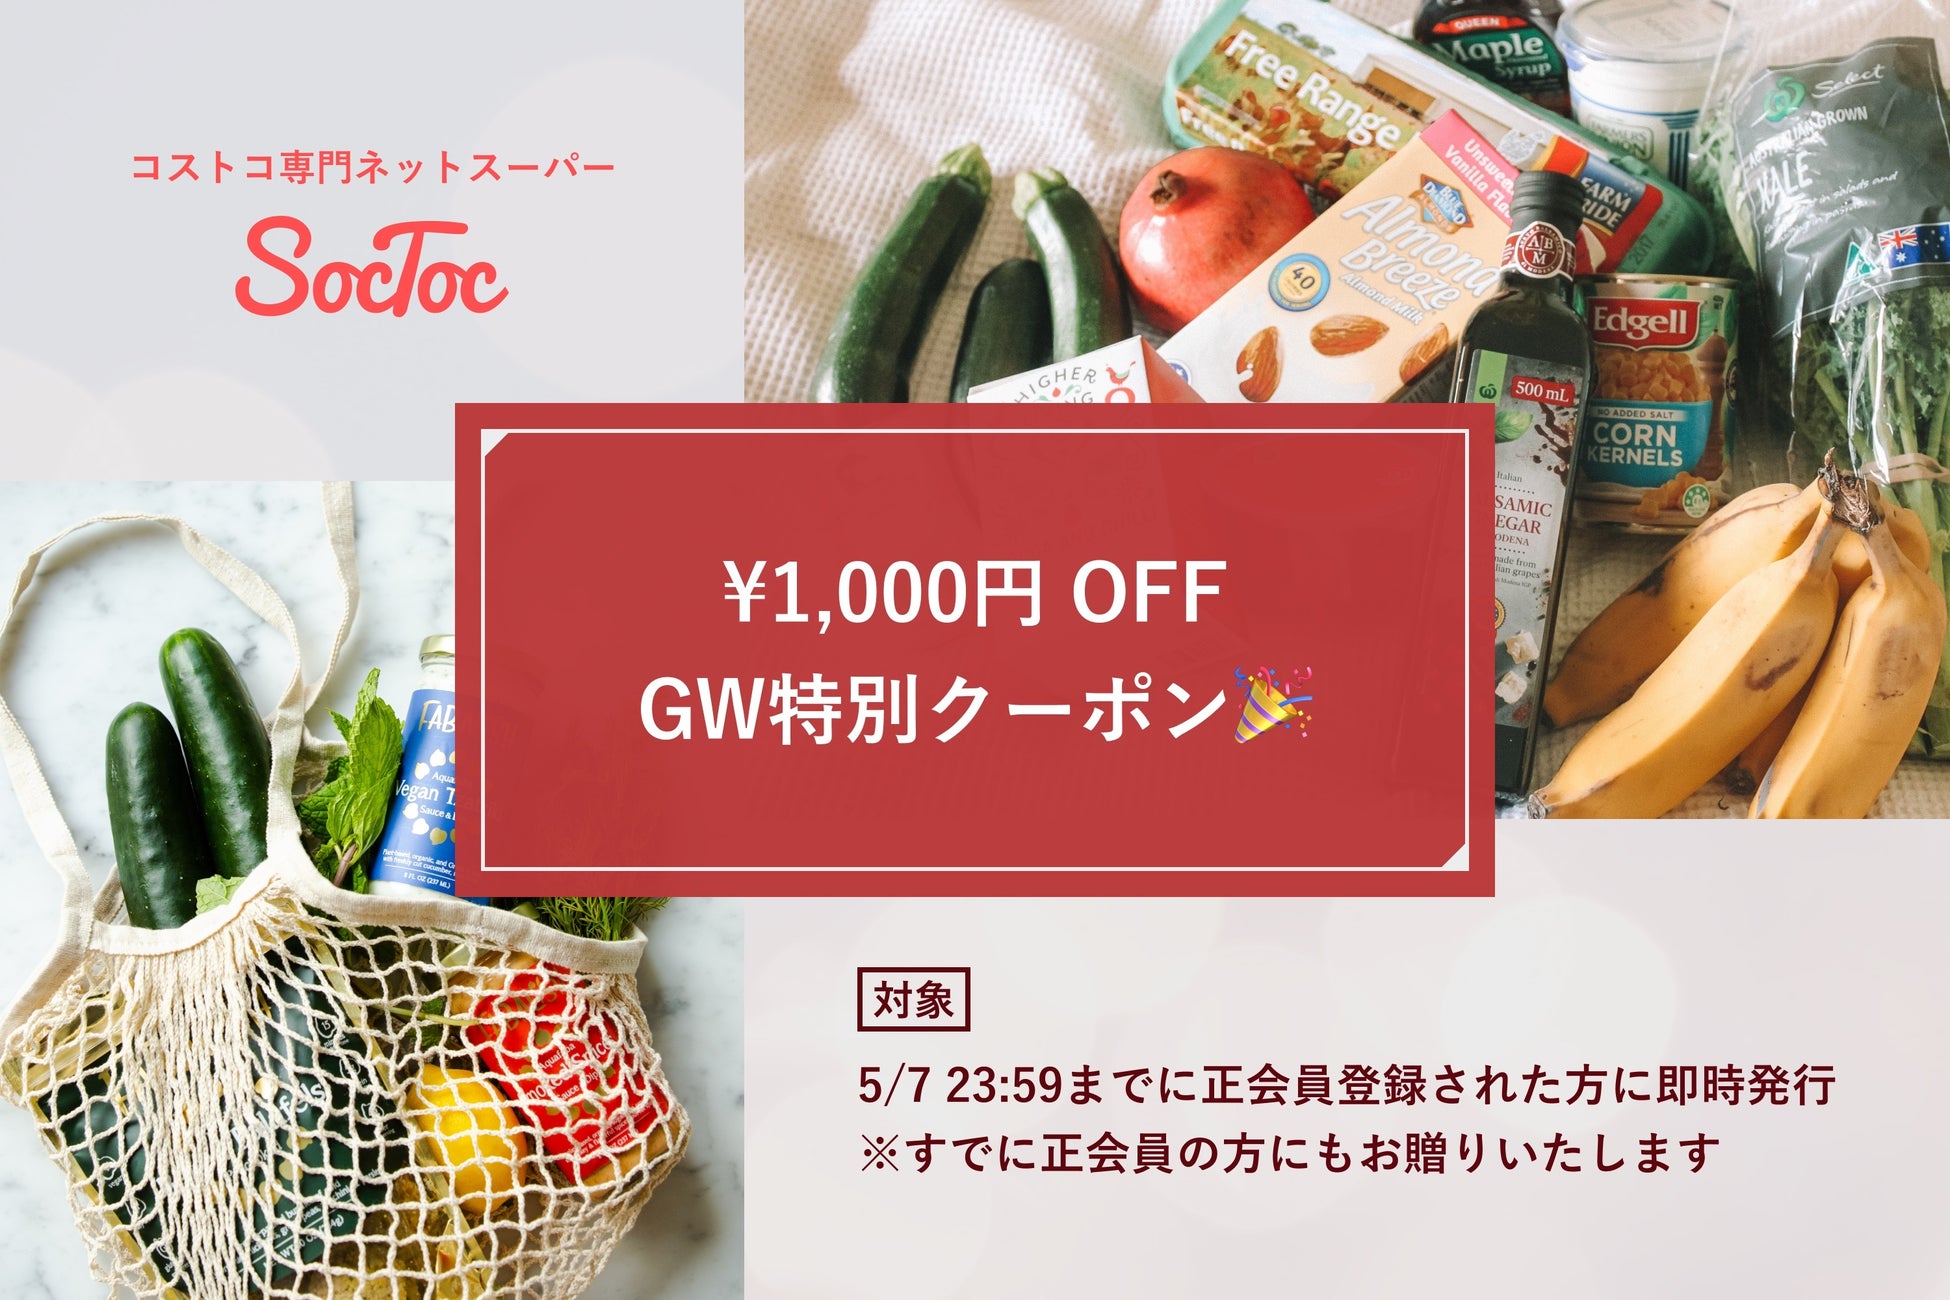 コストコ専門ネットスーパーSocToc、5月7日までの期間限定GWキャンペーンとして1,000円OFFクーポン配布と日替わりセールの実施